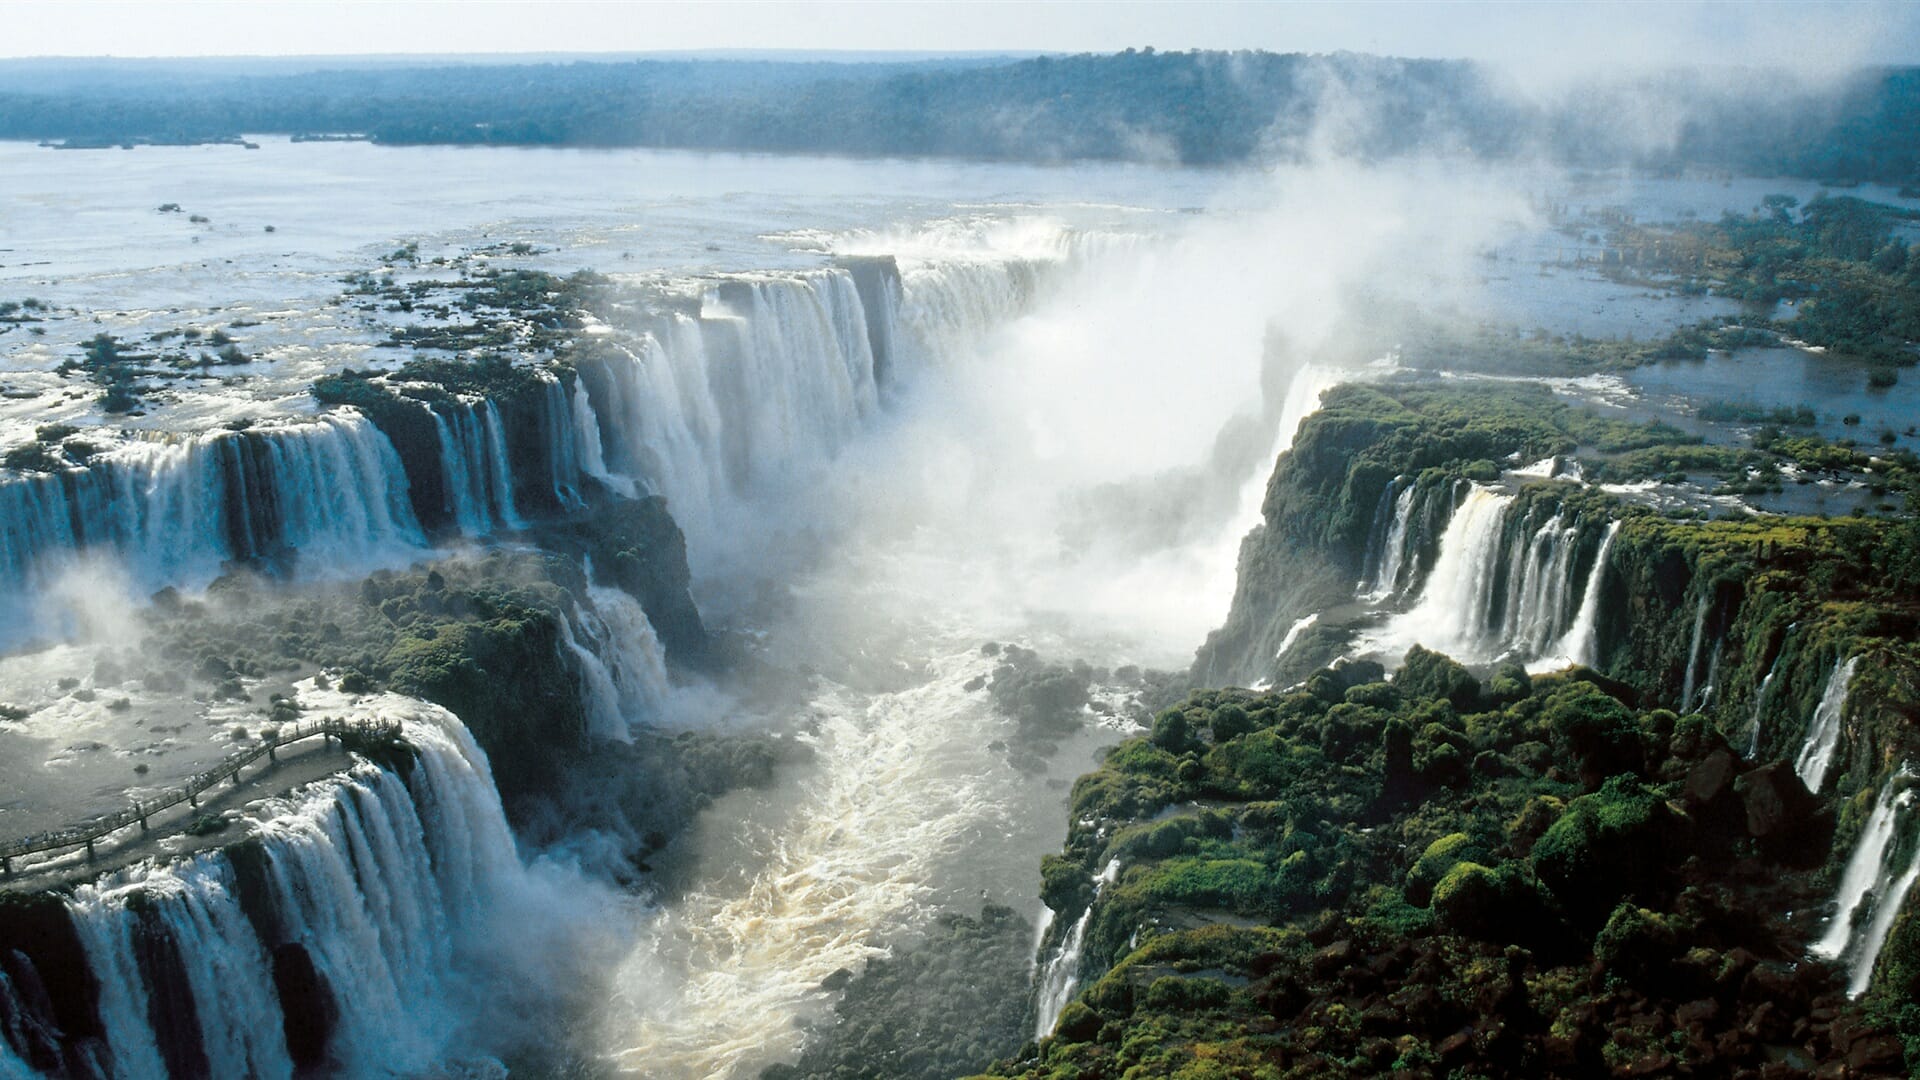 Conheça o voo sobre as Cataratas do Iguaçu com a Helisul! Cataratas do Iguaçu